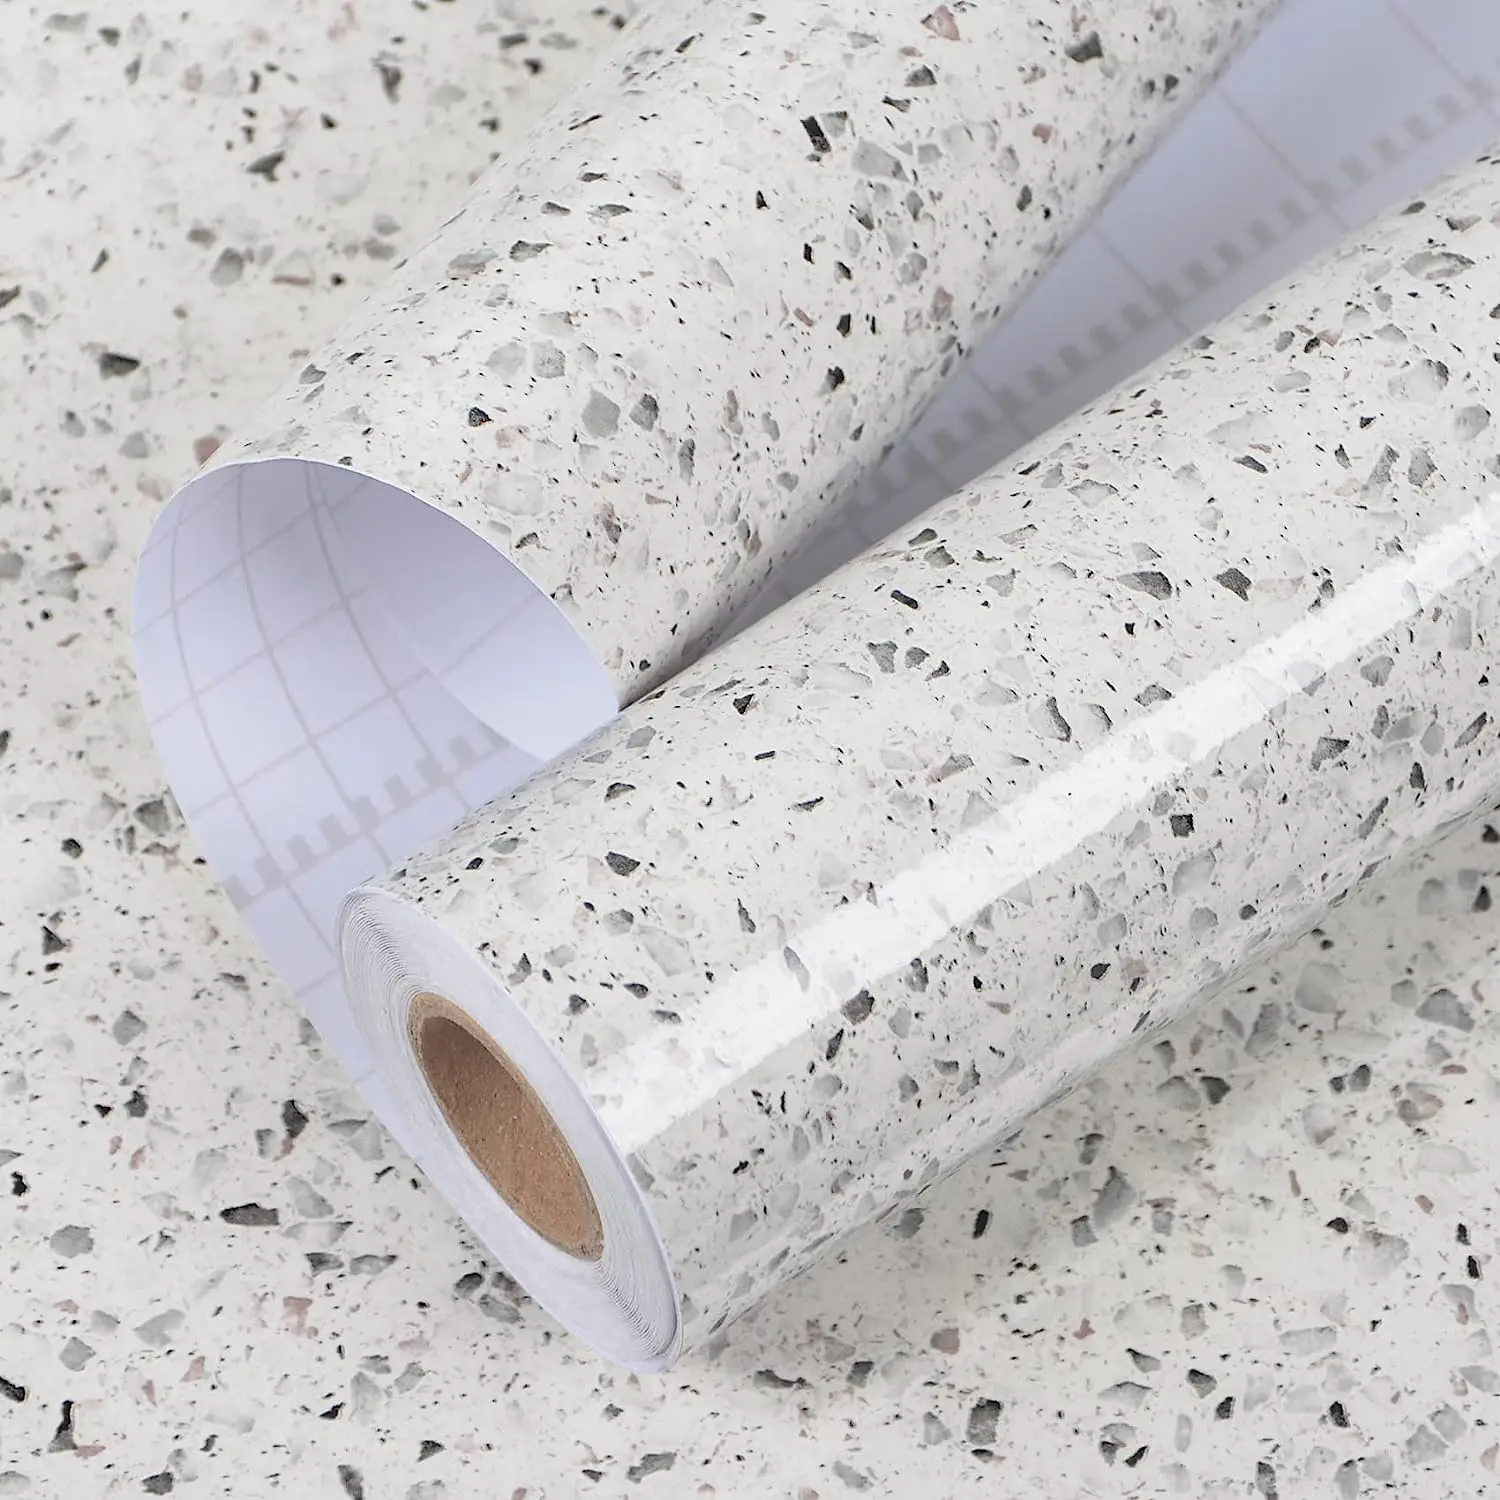 Granite Self Adhesive Wallpaper Contact Paper for Countertops Wall Stickers Decorative Film Bathroom Kitchen Cabinet Home Decor bathroom cabinet sonoma oak 32x25 5x190 cm chipboard